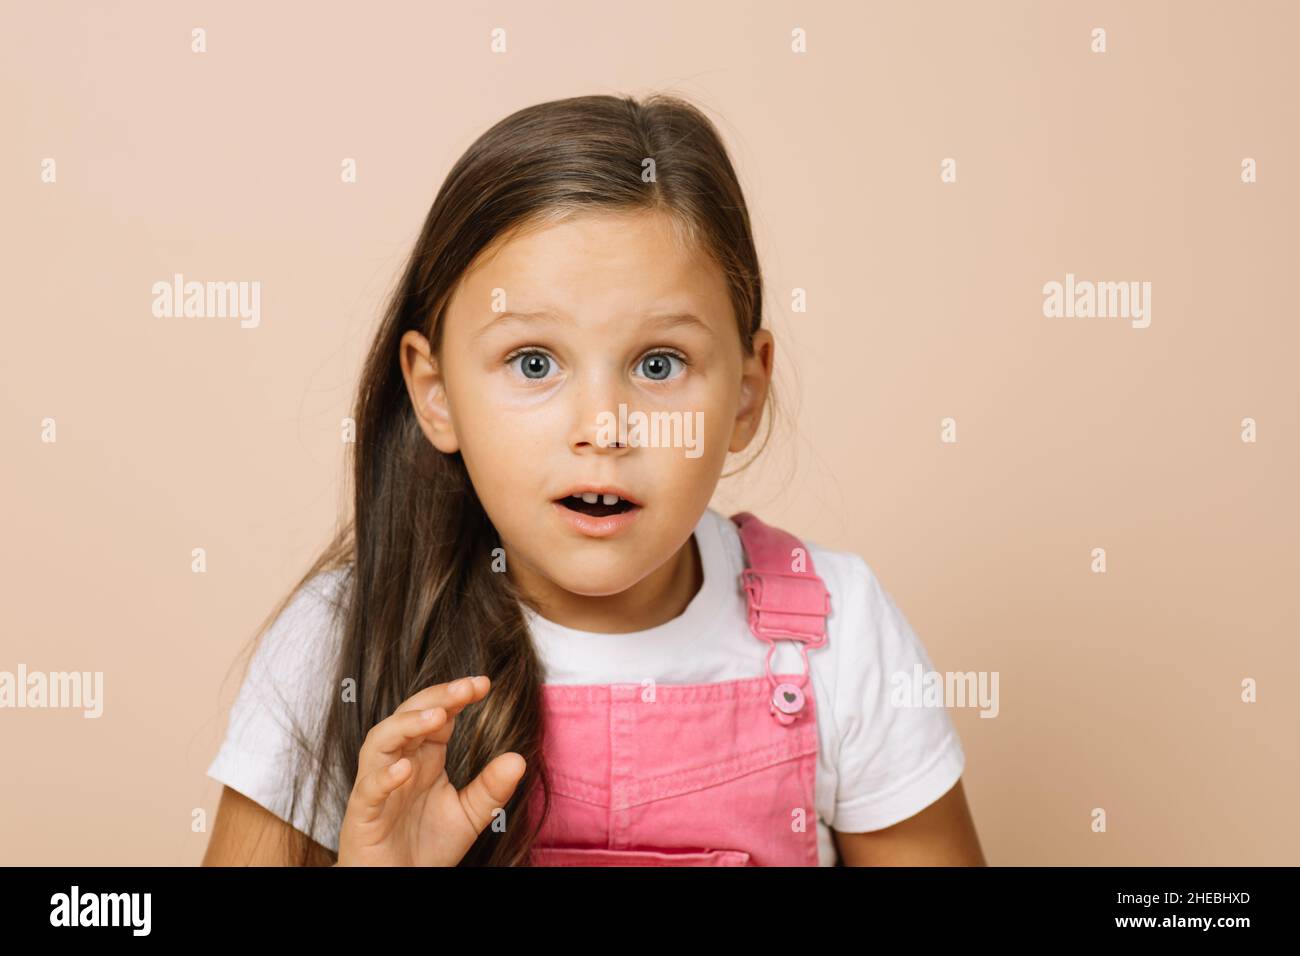 Portrait d'un enfant avec des yeux ronds surpris, une bouche légèrement ouverte et une main levée regardant l'appareil photo portant une combinaison rose vif et un t-shirt blanc Banque D'Images